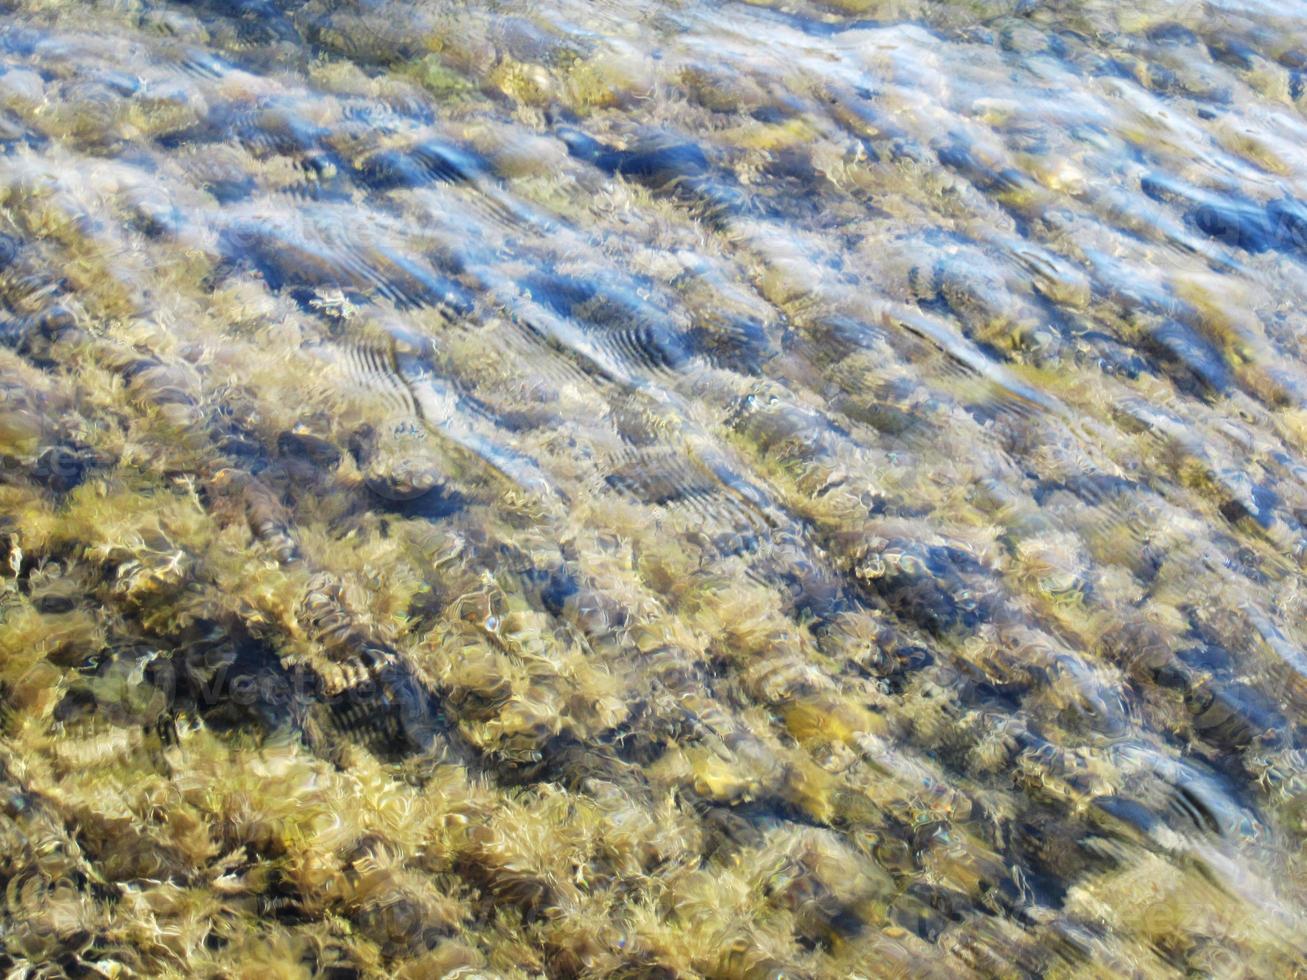 vackra gulgröna alger i form av fjäder ligger tyst på botten av djuphavet foto